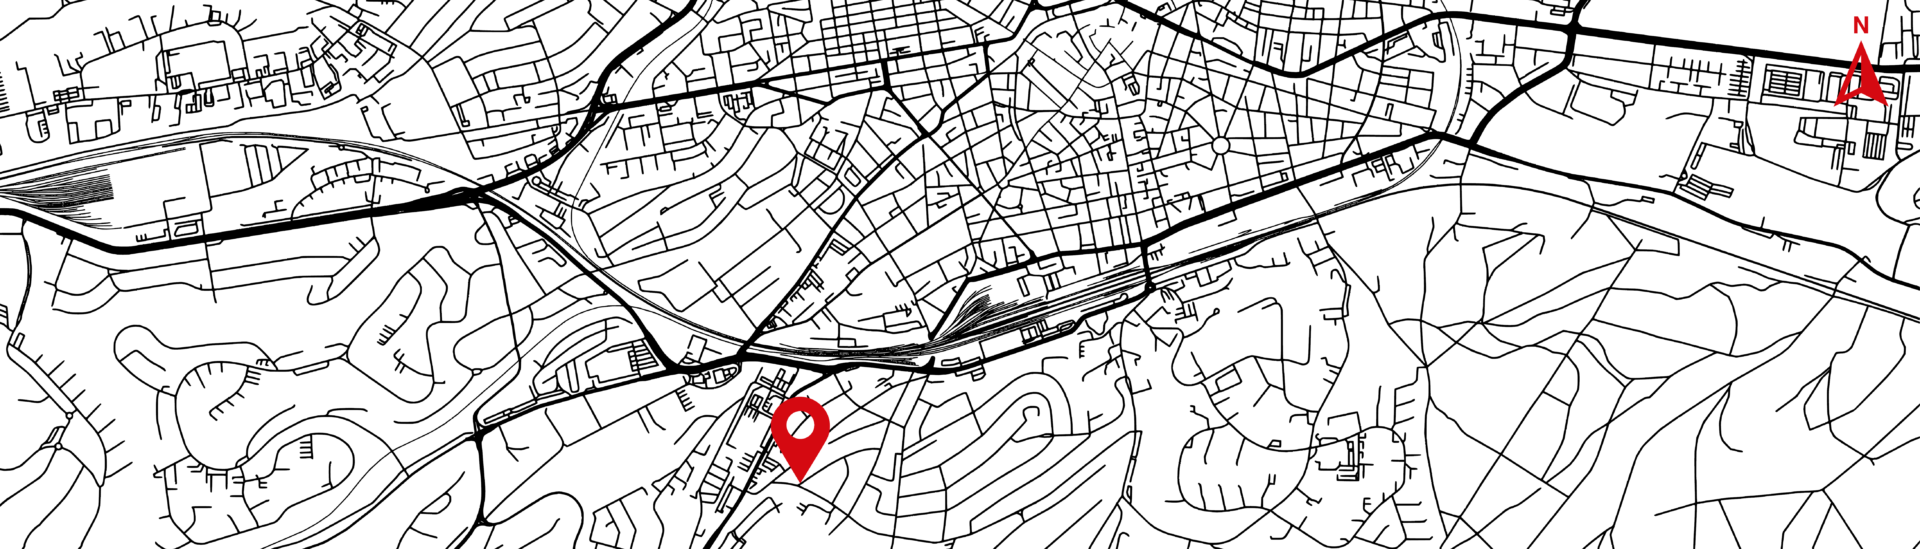 Karte von Kaiserslautern mit Markierung